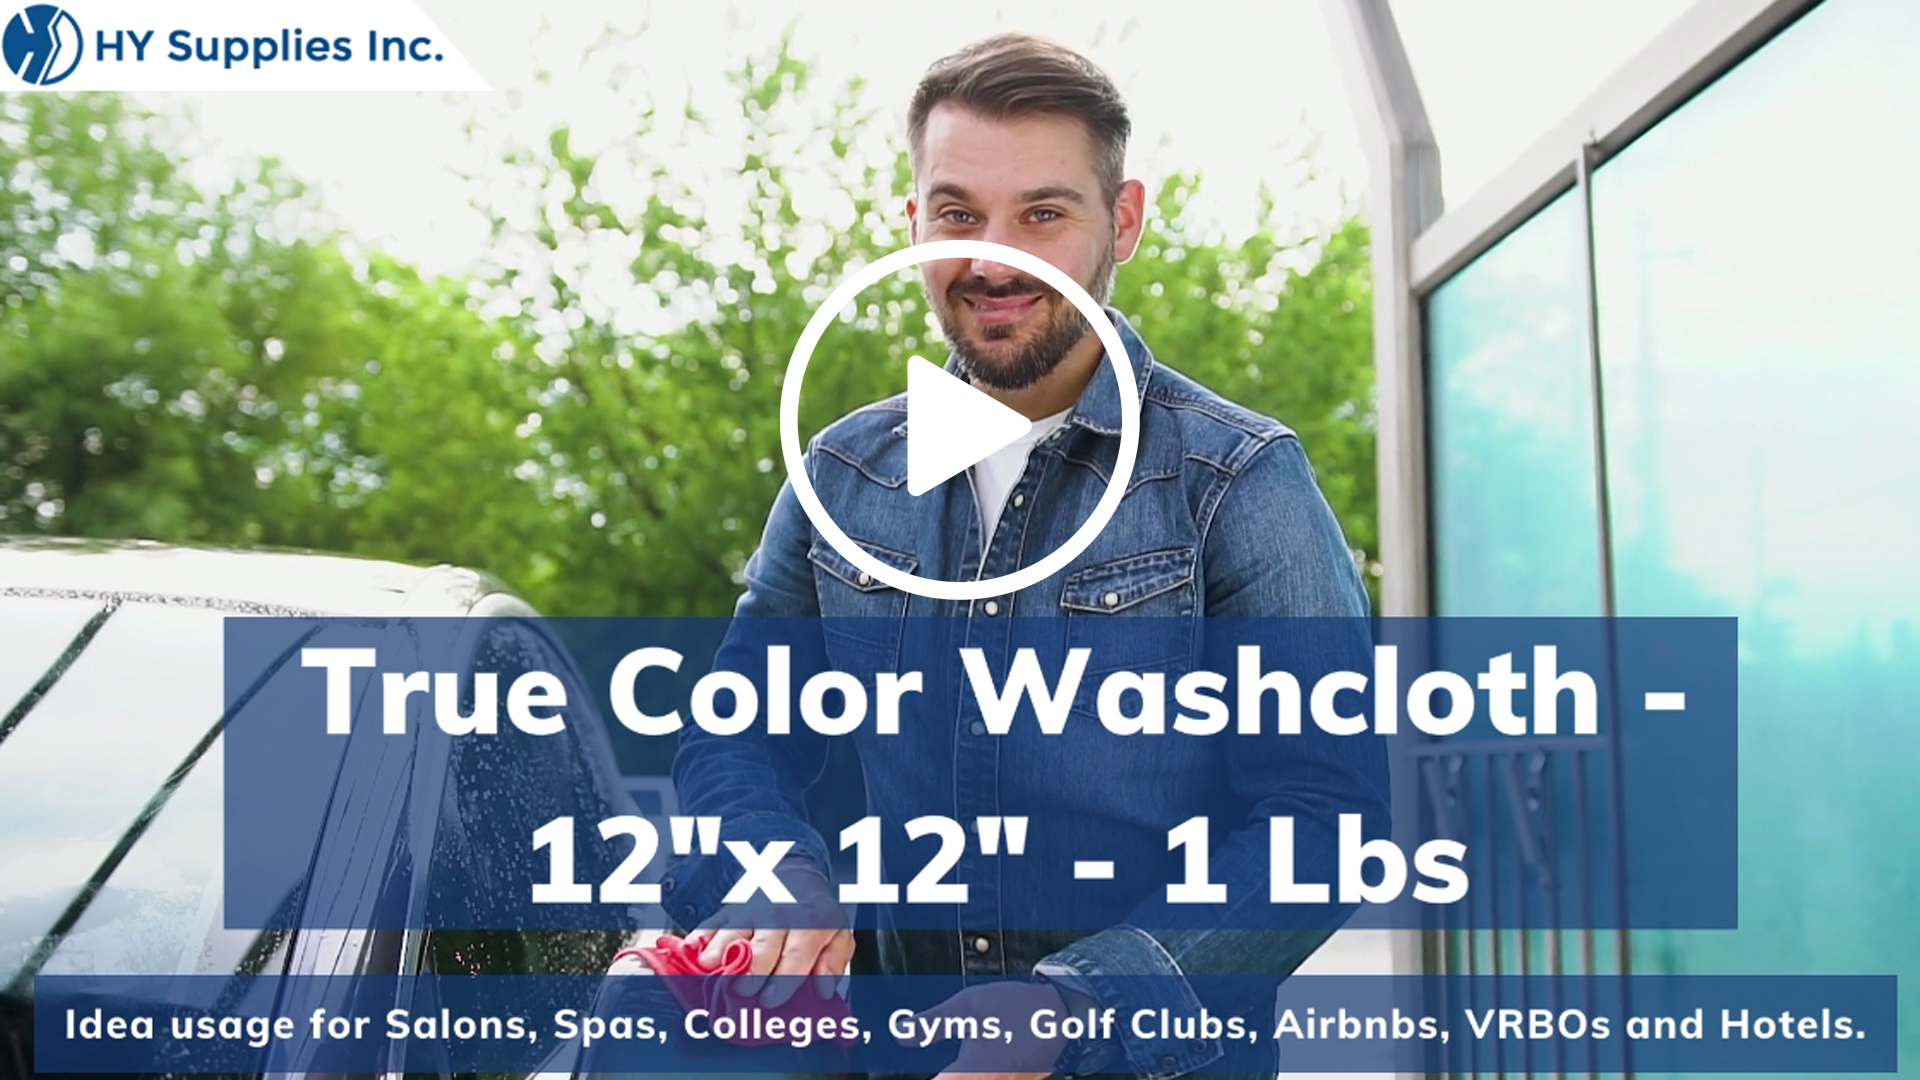 True Color Washcloth - 12"x 12"